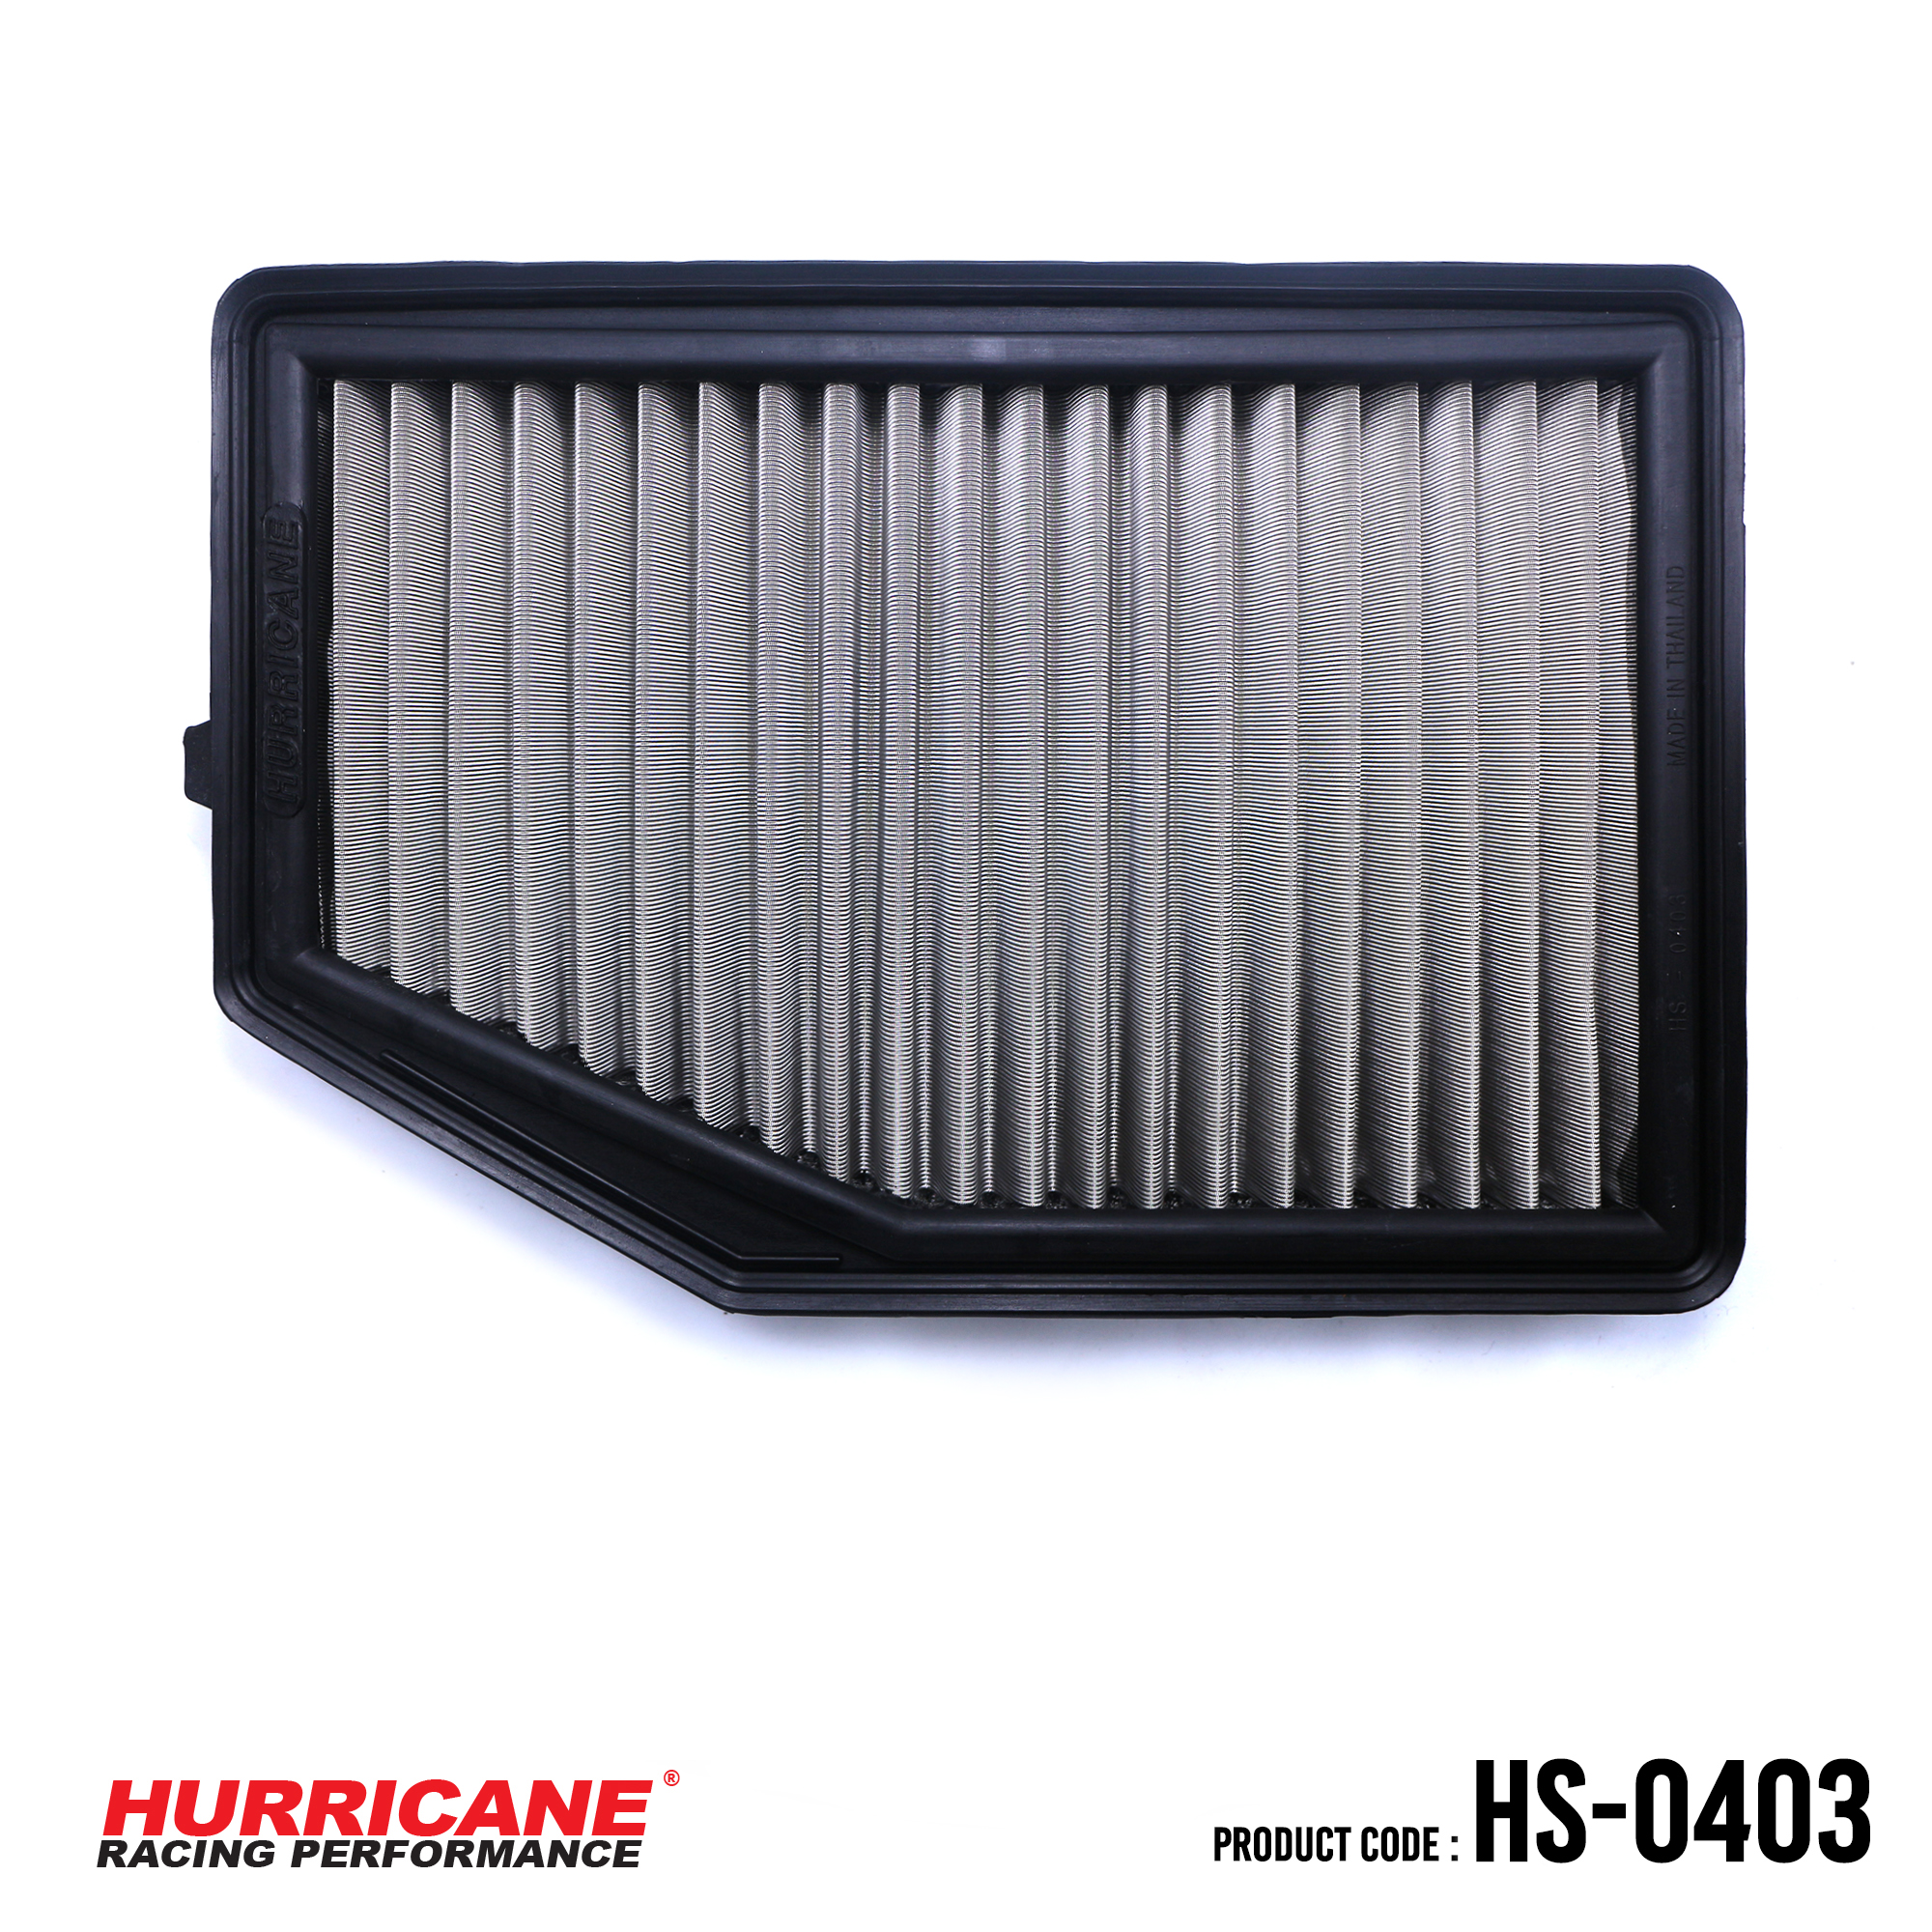 HURRICANE STAINLESS STEEL AIR FILTER FOR HS-0403 Honda